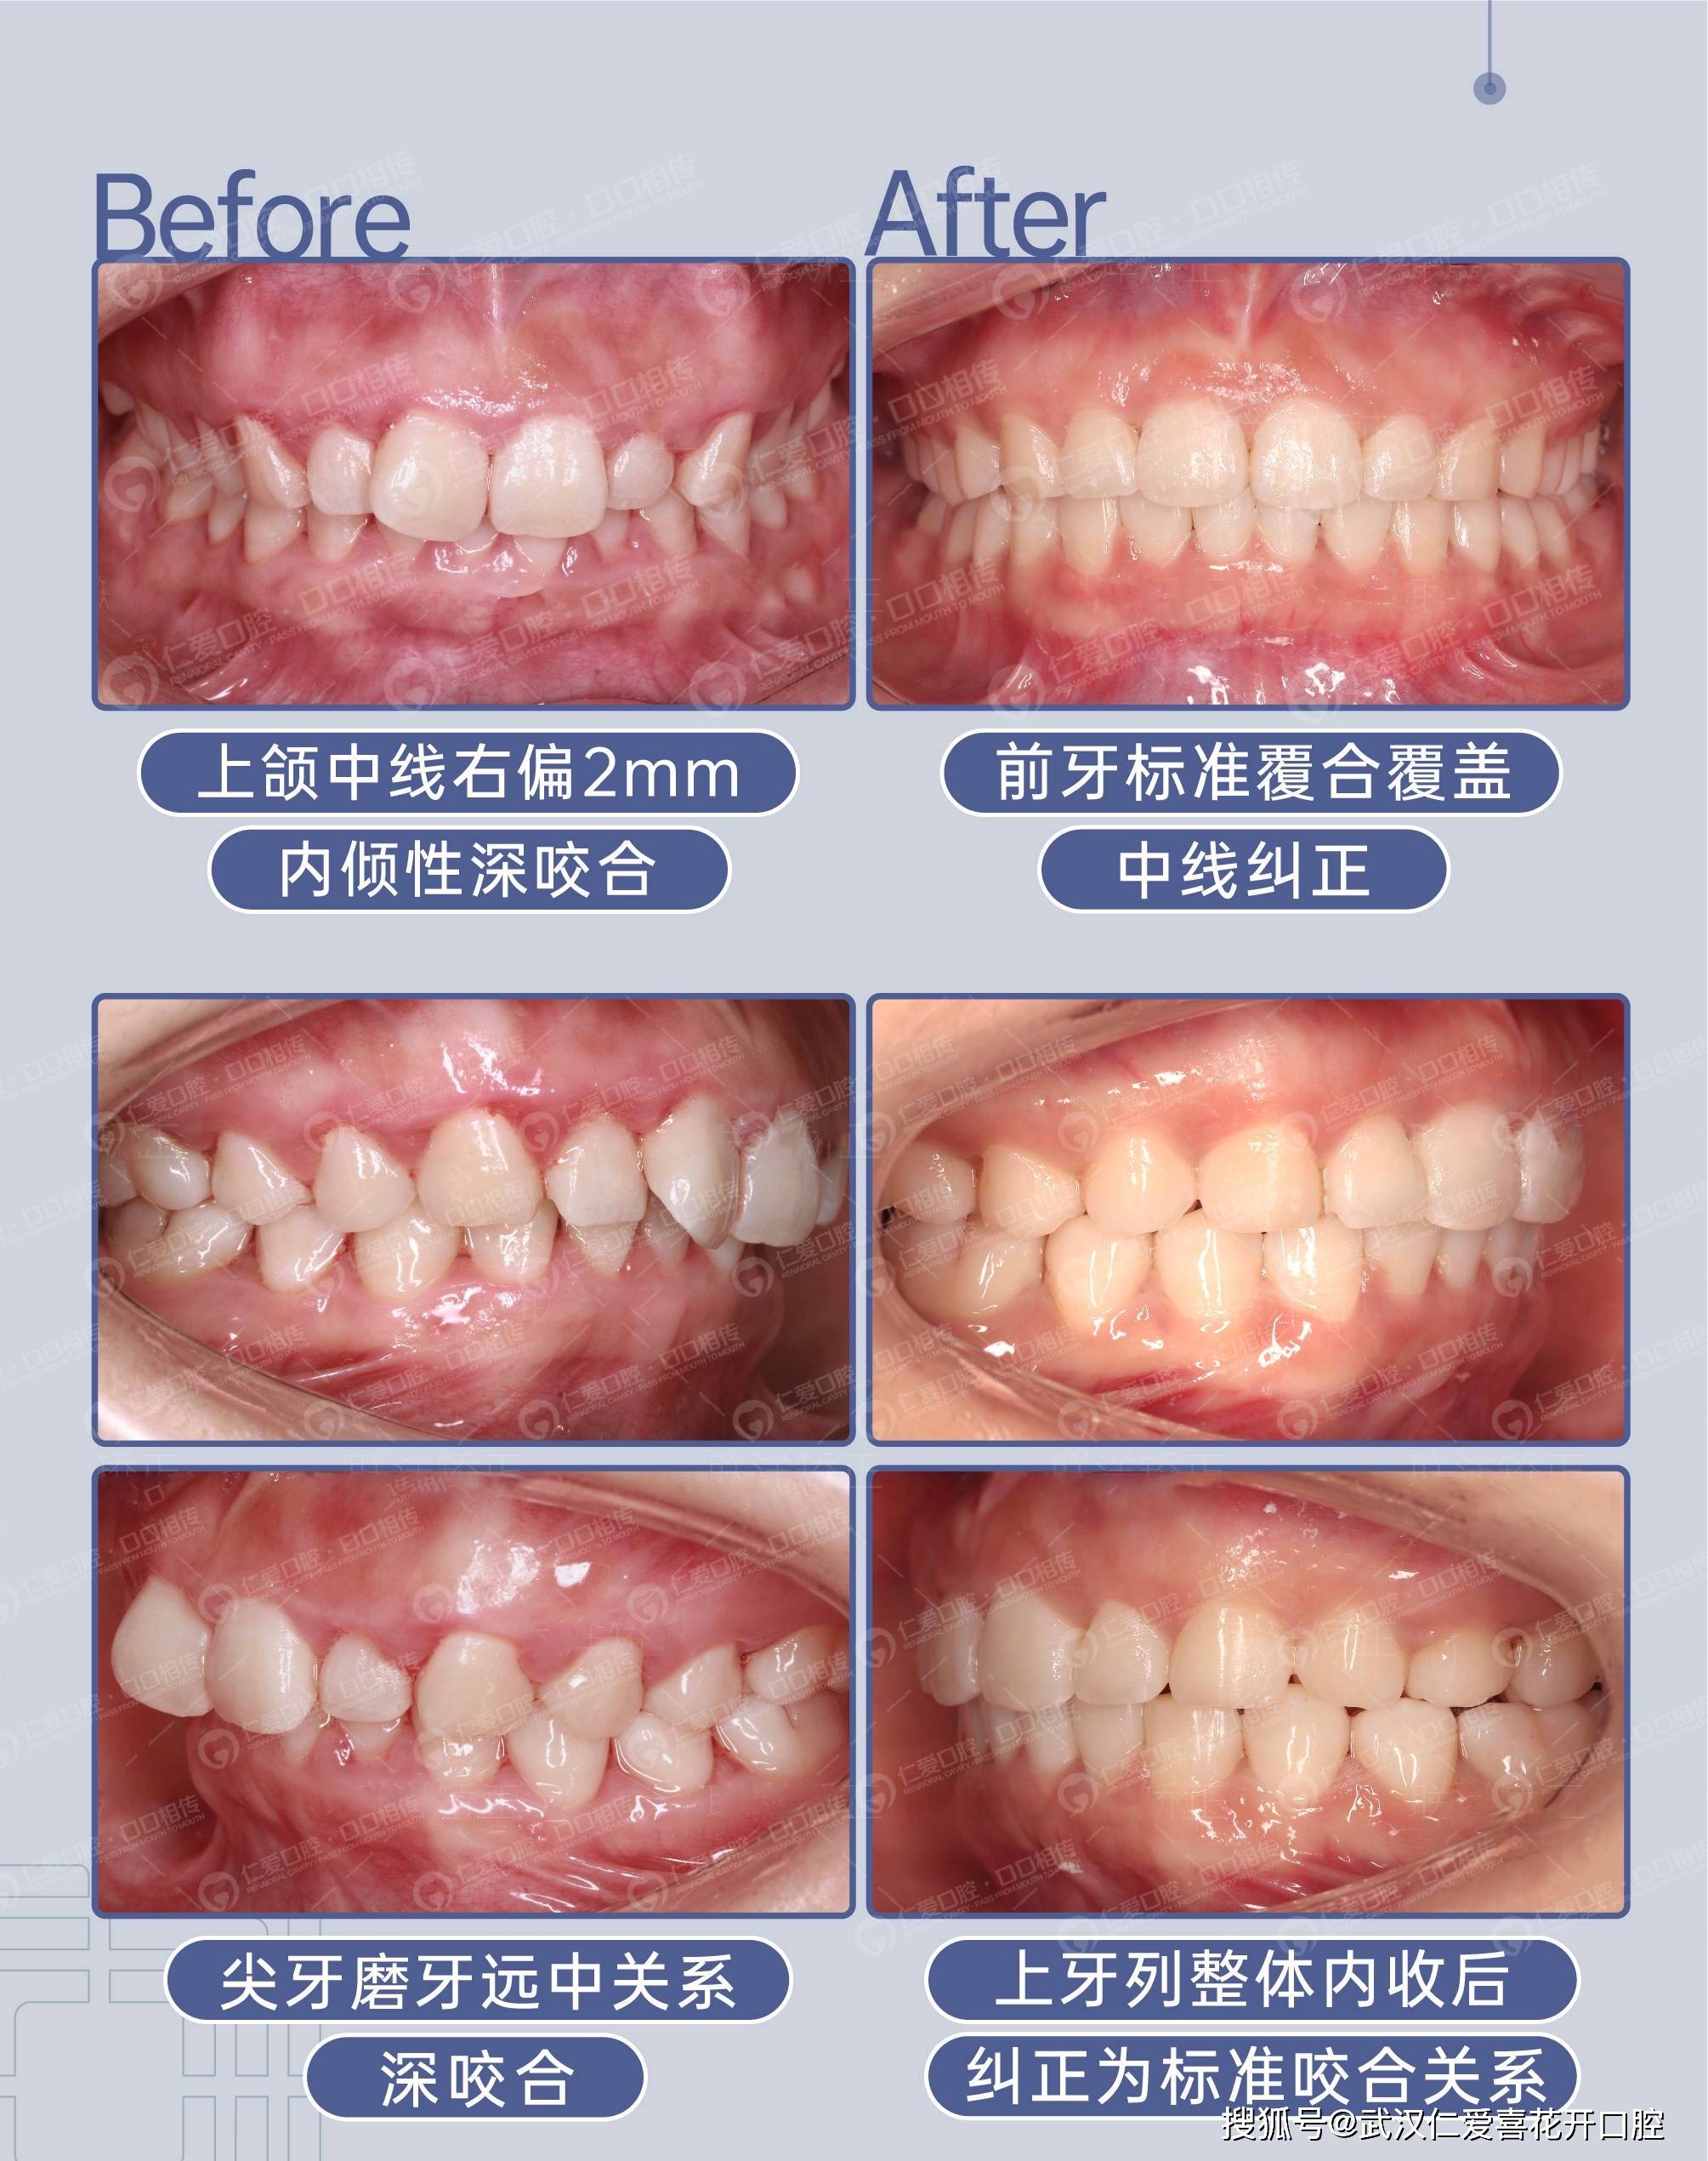 这么多种牙齿畸形,不矫正有什么影响吗?